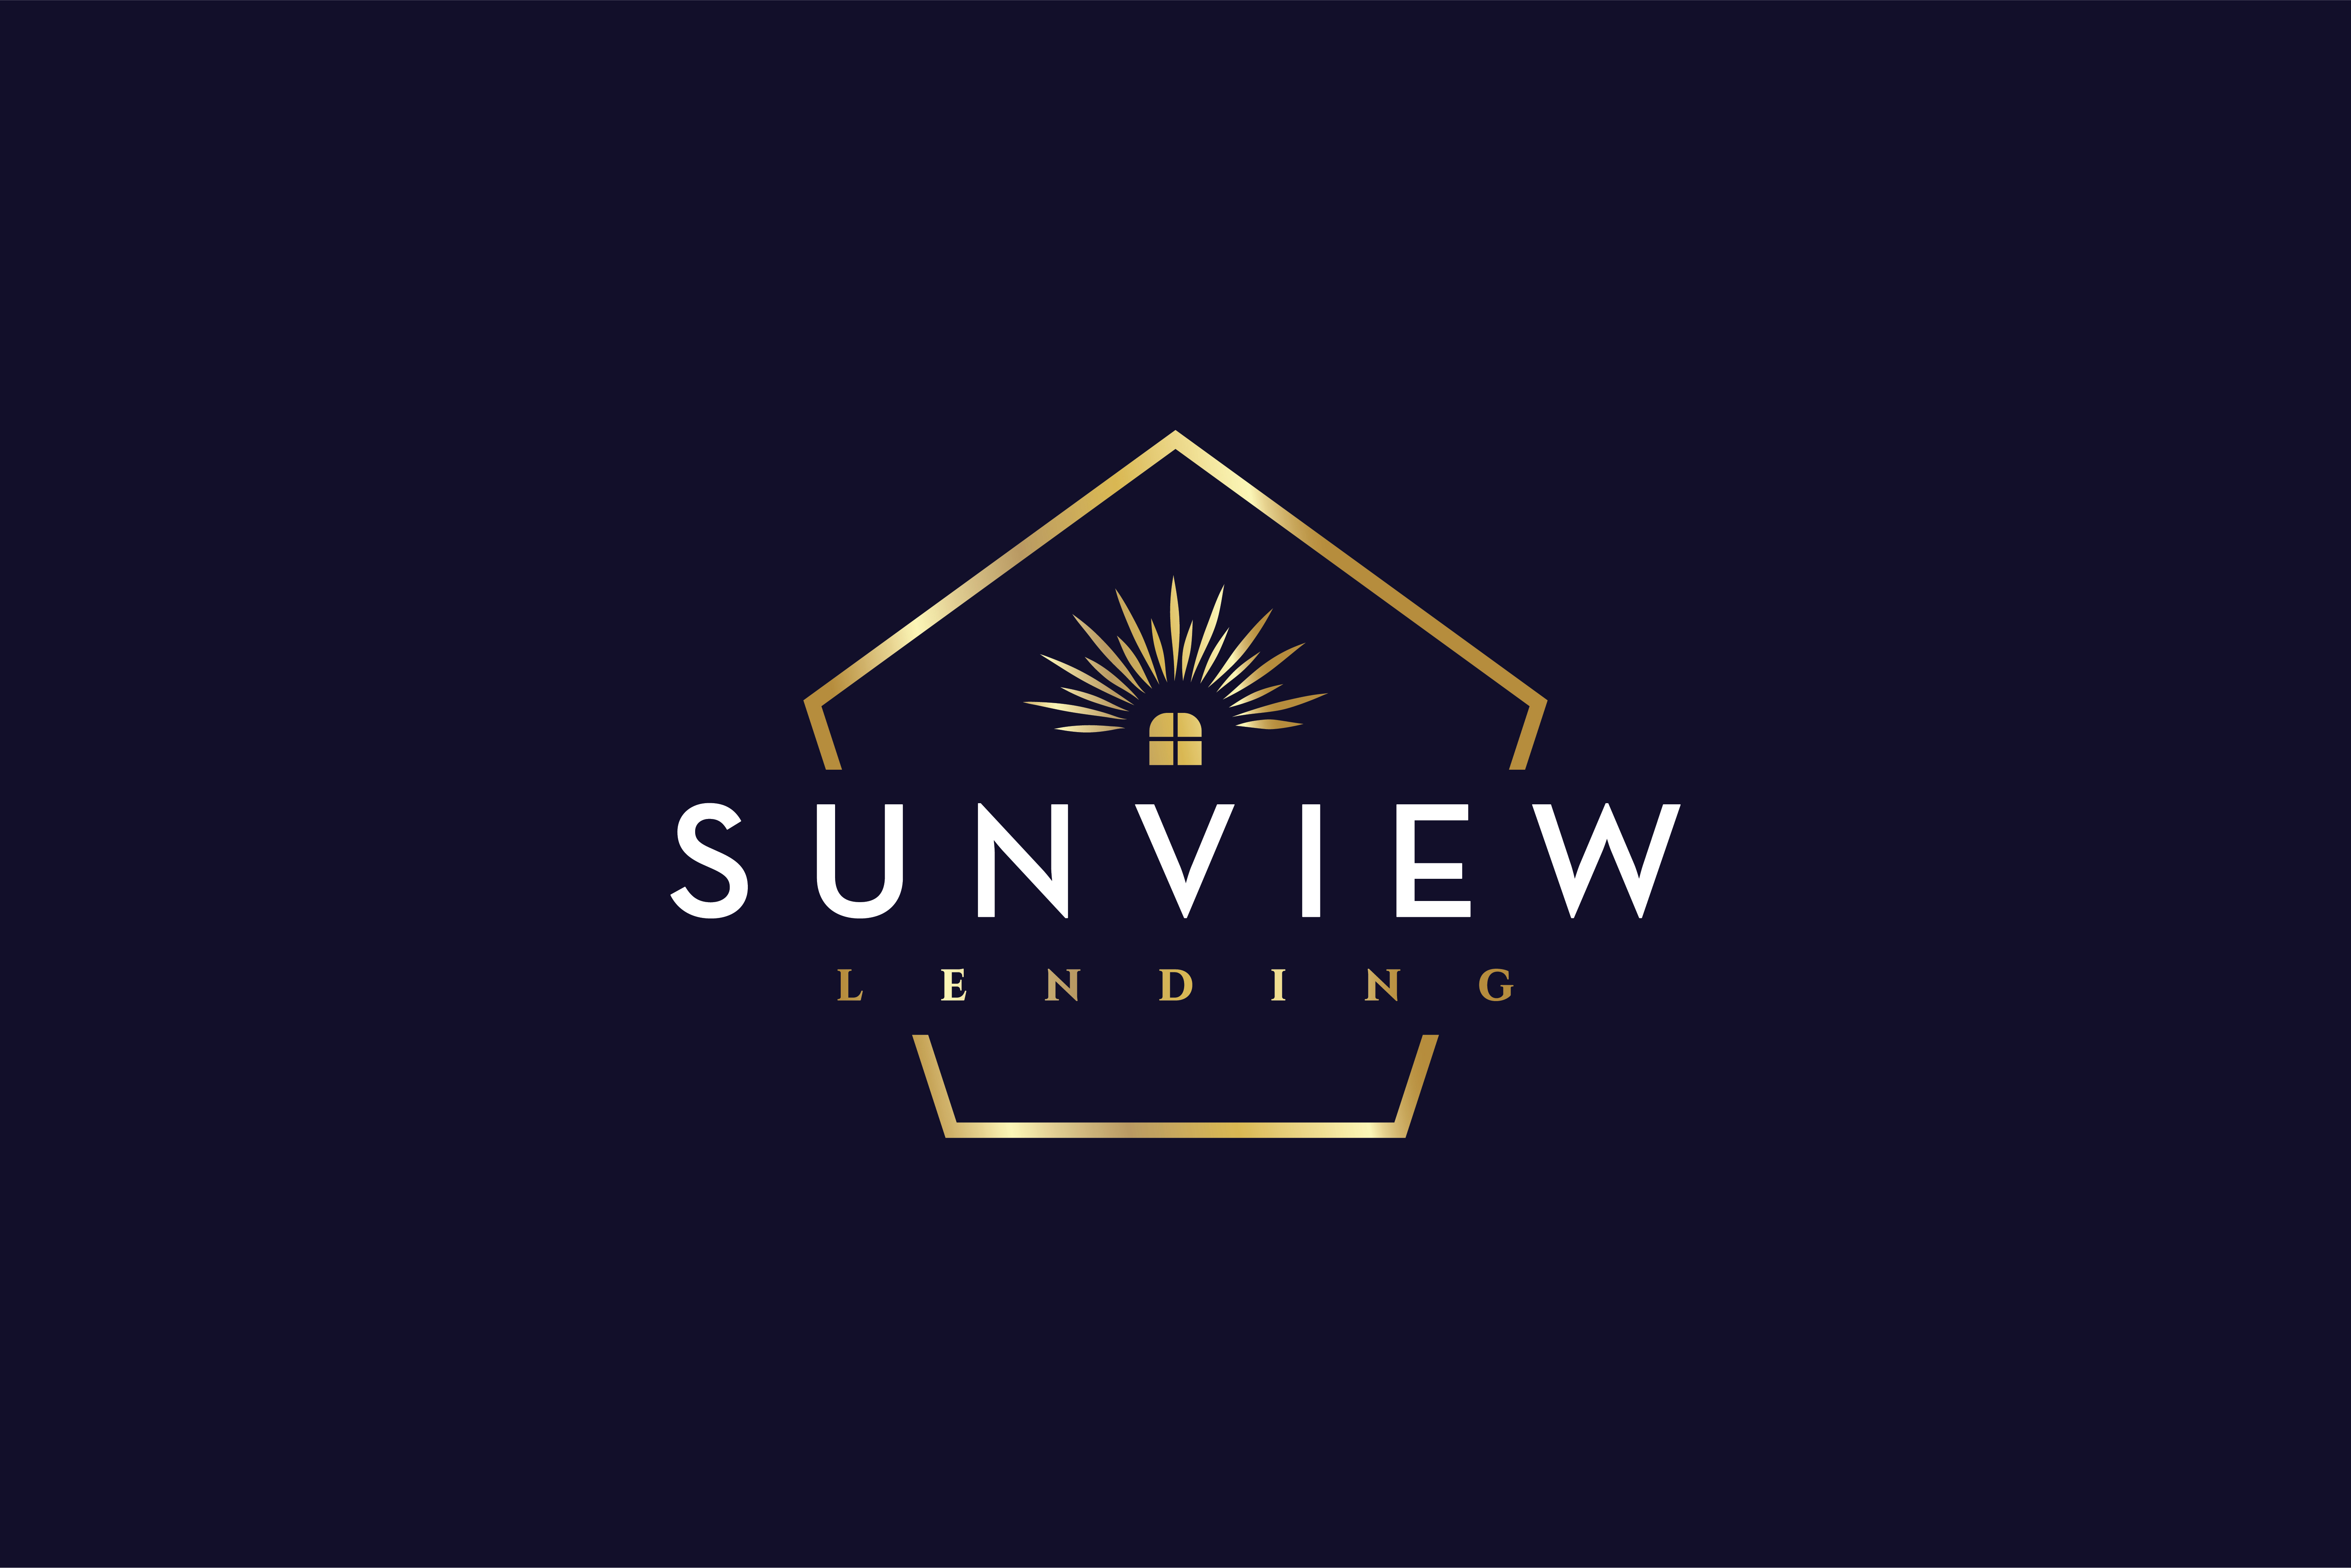 Sunview Lending